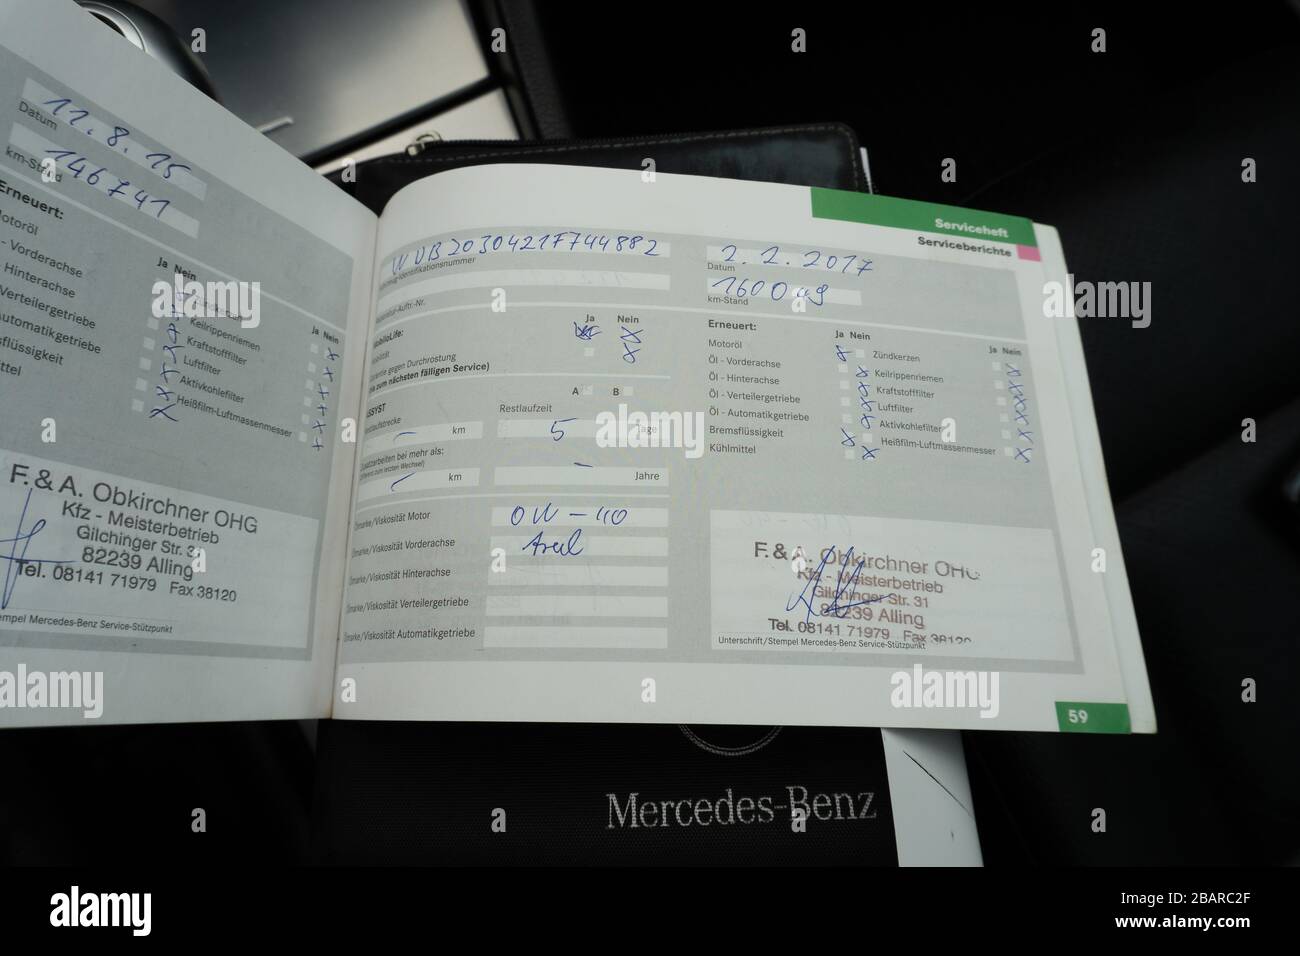 Mercedes Benz Service-Historie Buch-planmäßige Wartung